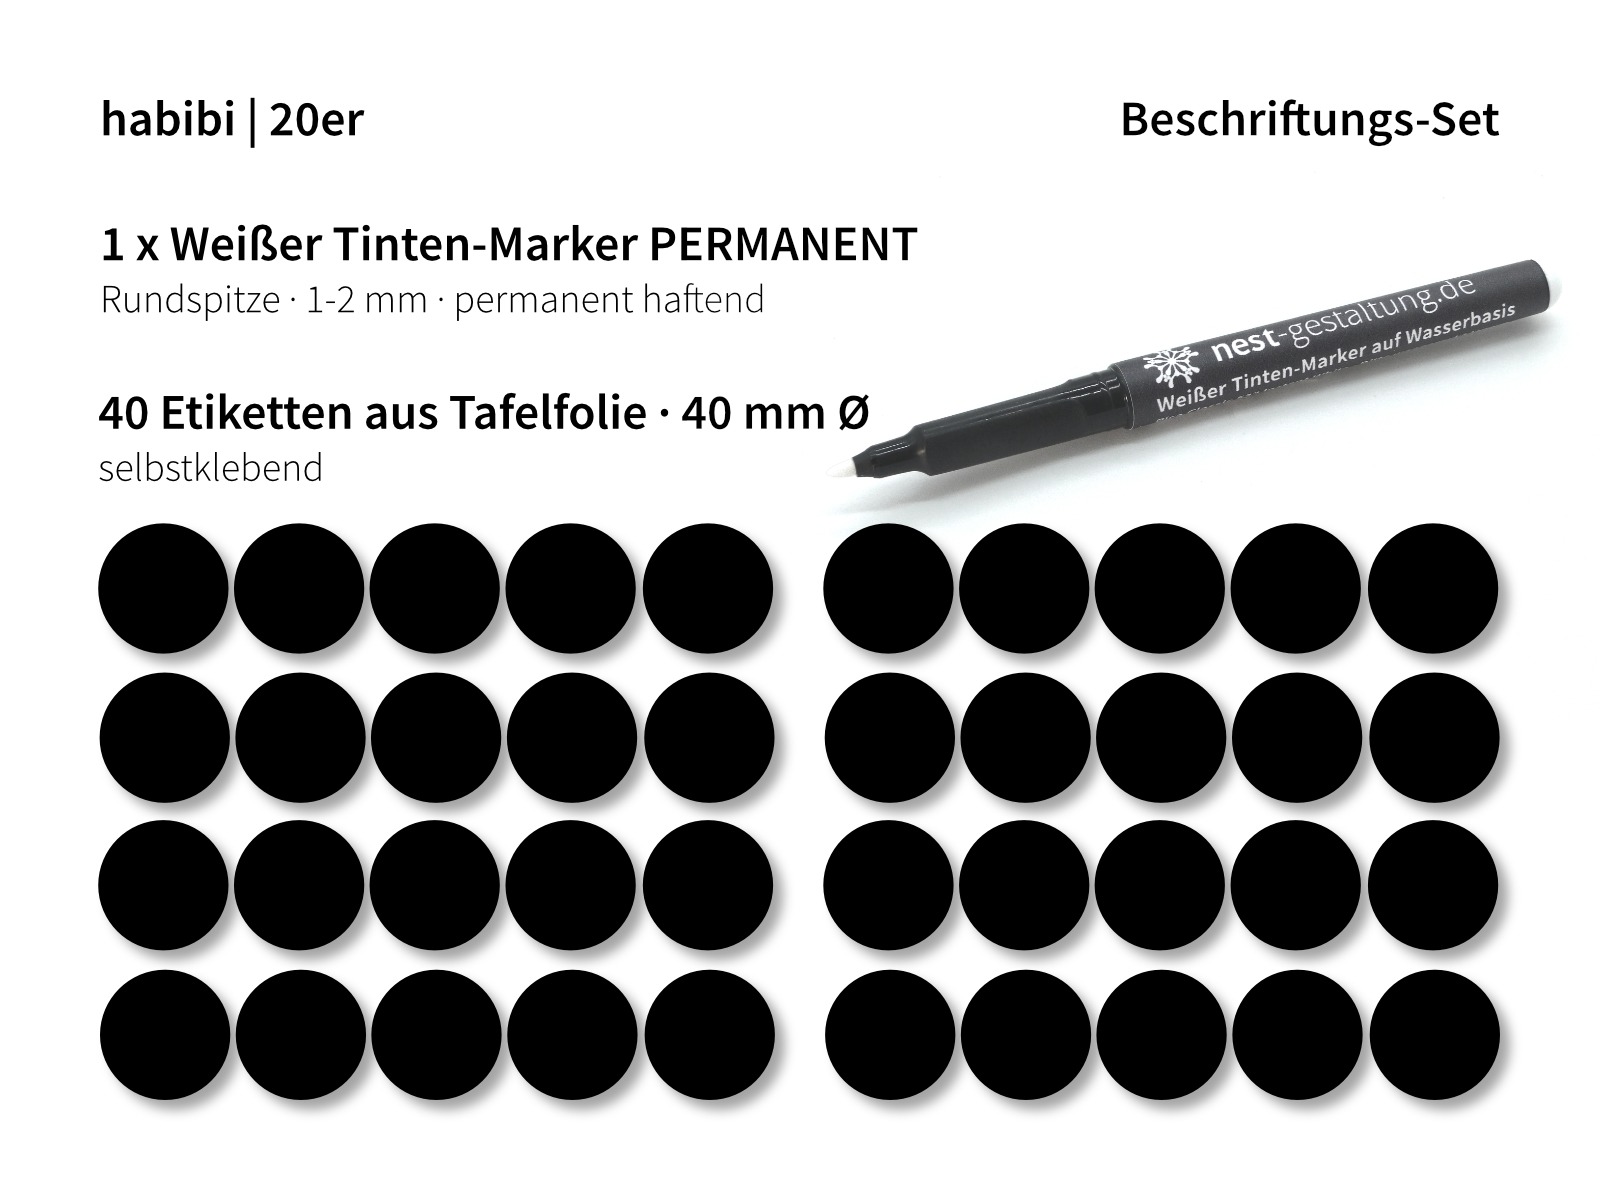 Beschriftungs-Set 2 x 20 40 Etiketten 1 x Weißer Tinten-Marker PERMANENT 2